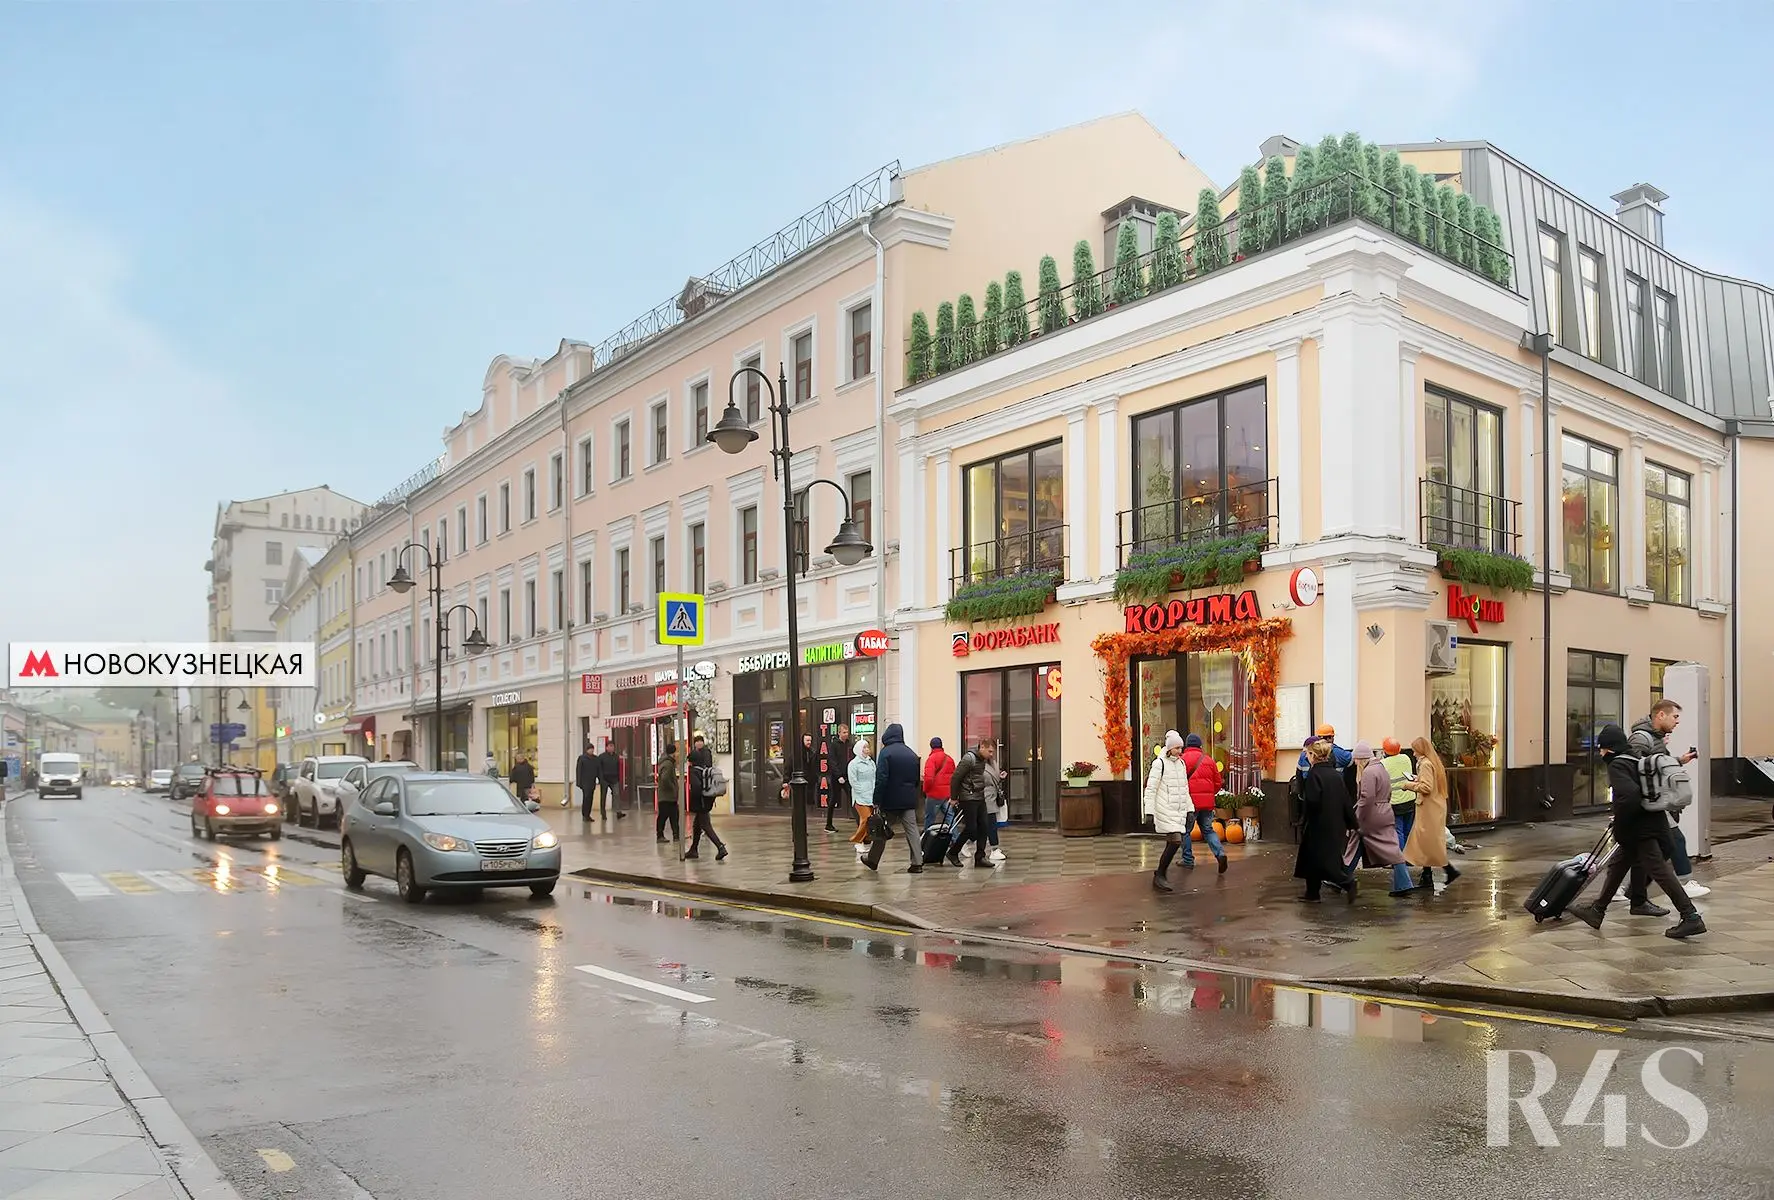 Продажа готового арендного бизнеса площадью 78.2 м2 в Москве: Пятницкая, 16с1 R4S | Realty4Sale